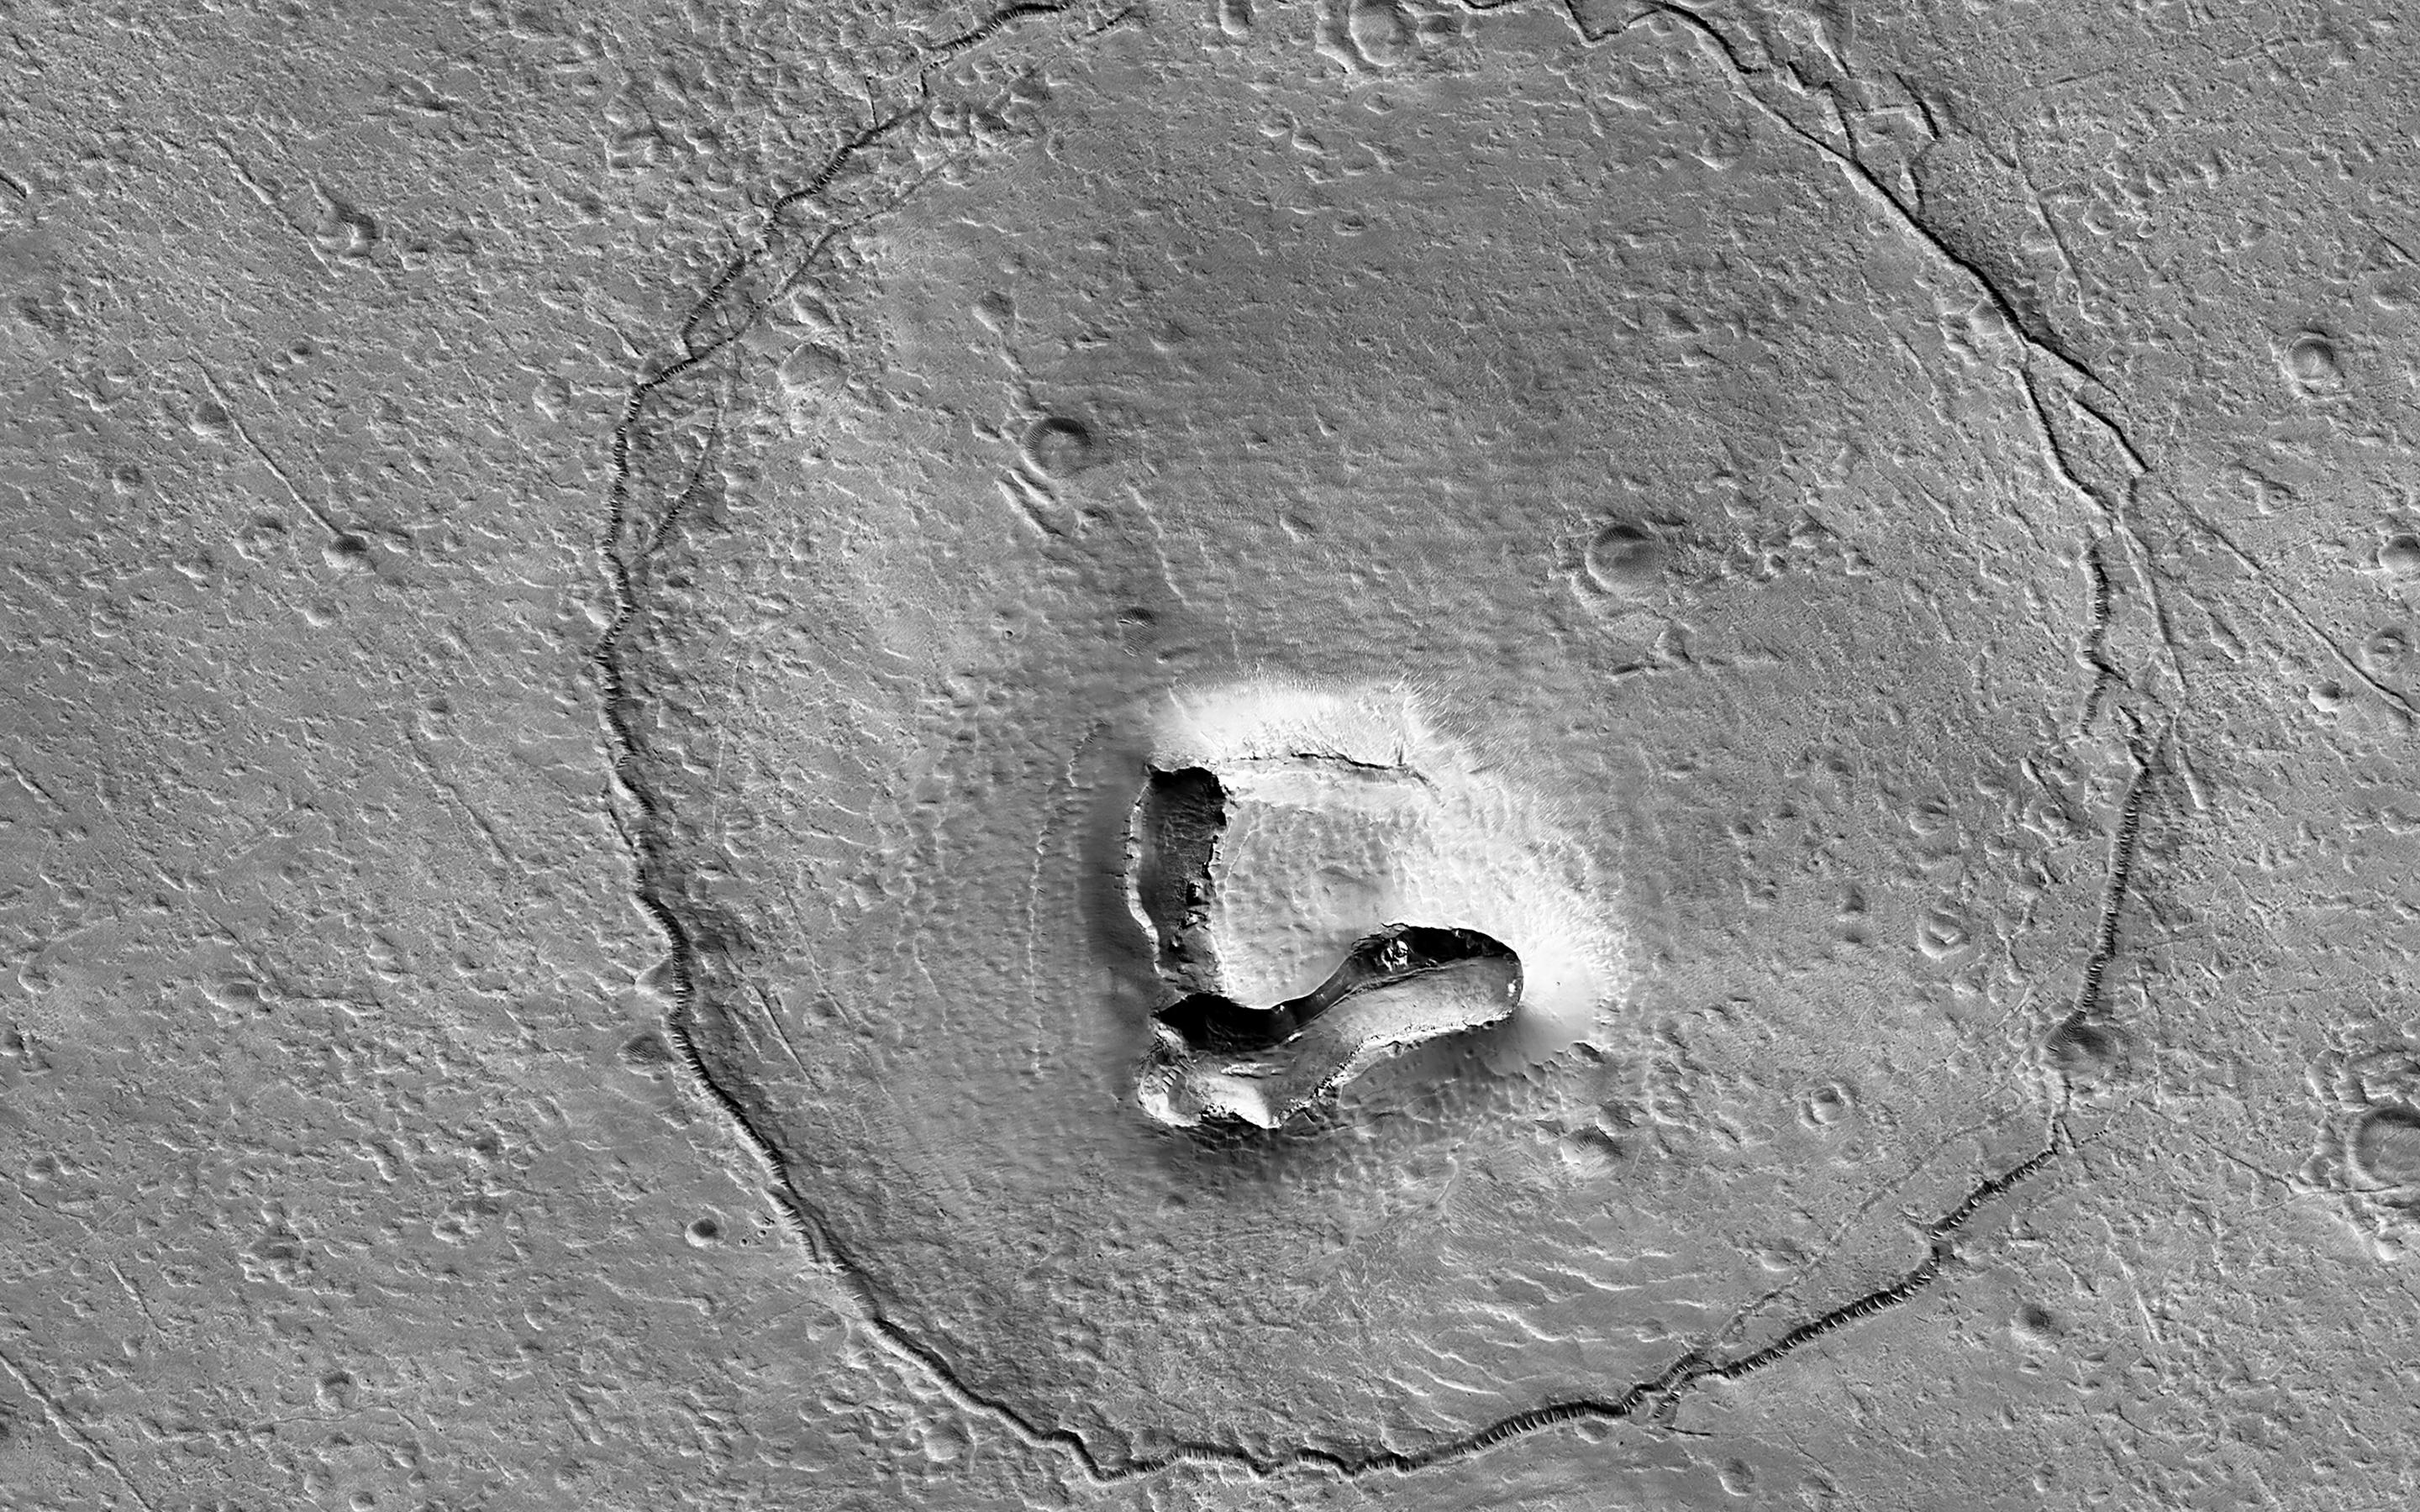 A Bear on Mars? – NASA